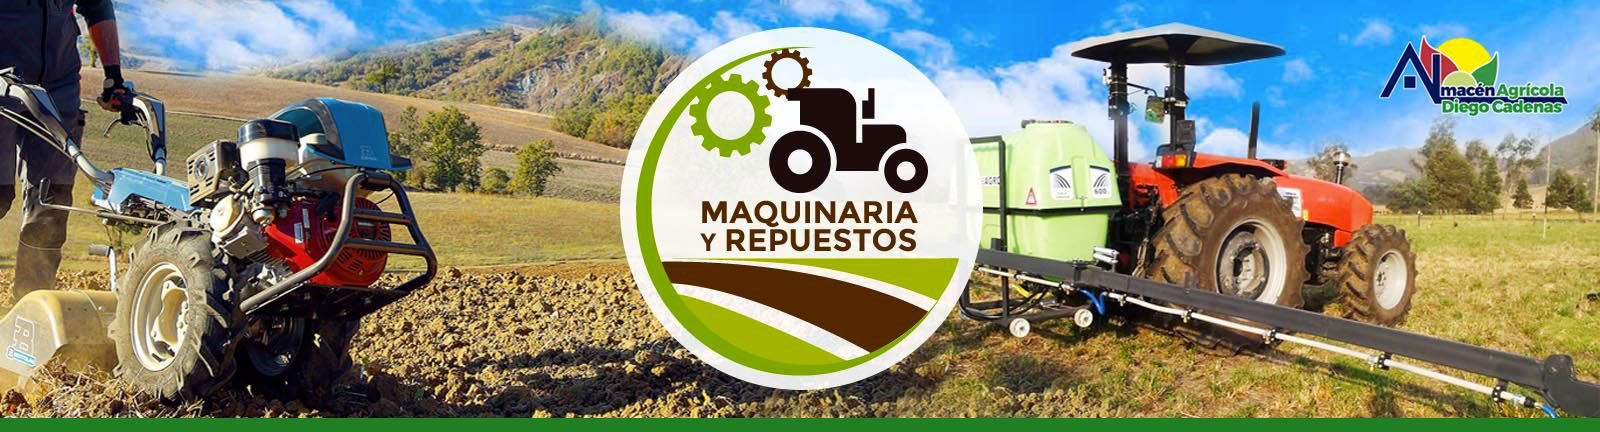 CADENA PARA MOTOSIERRA - Recambios Maquinaria Agrícola, Repuesto  MaquinariaRecambios Maquinaria Agrícola